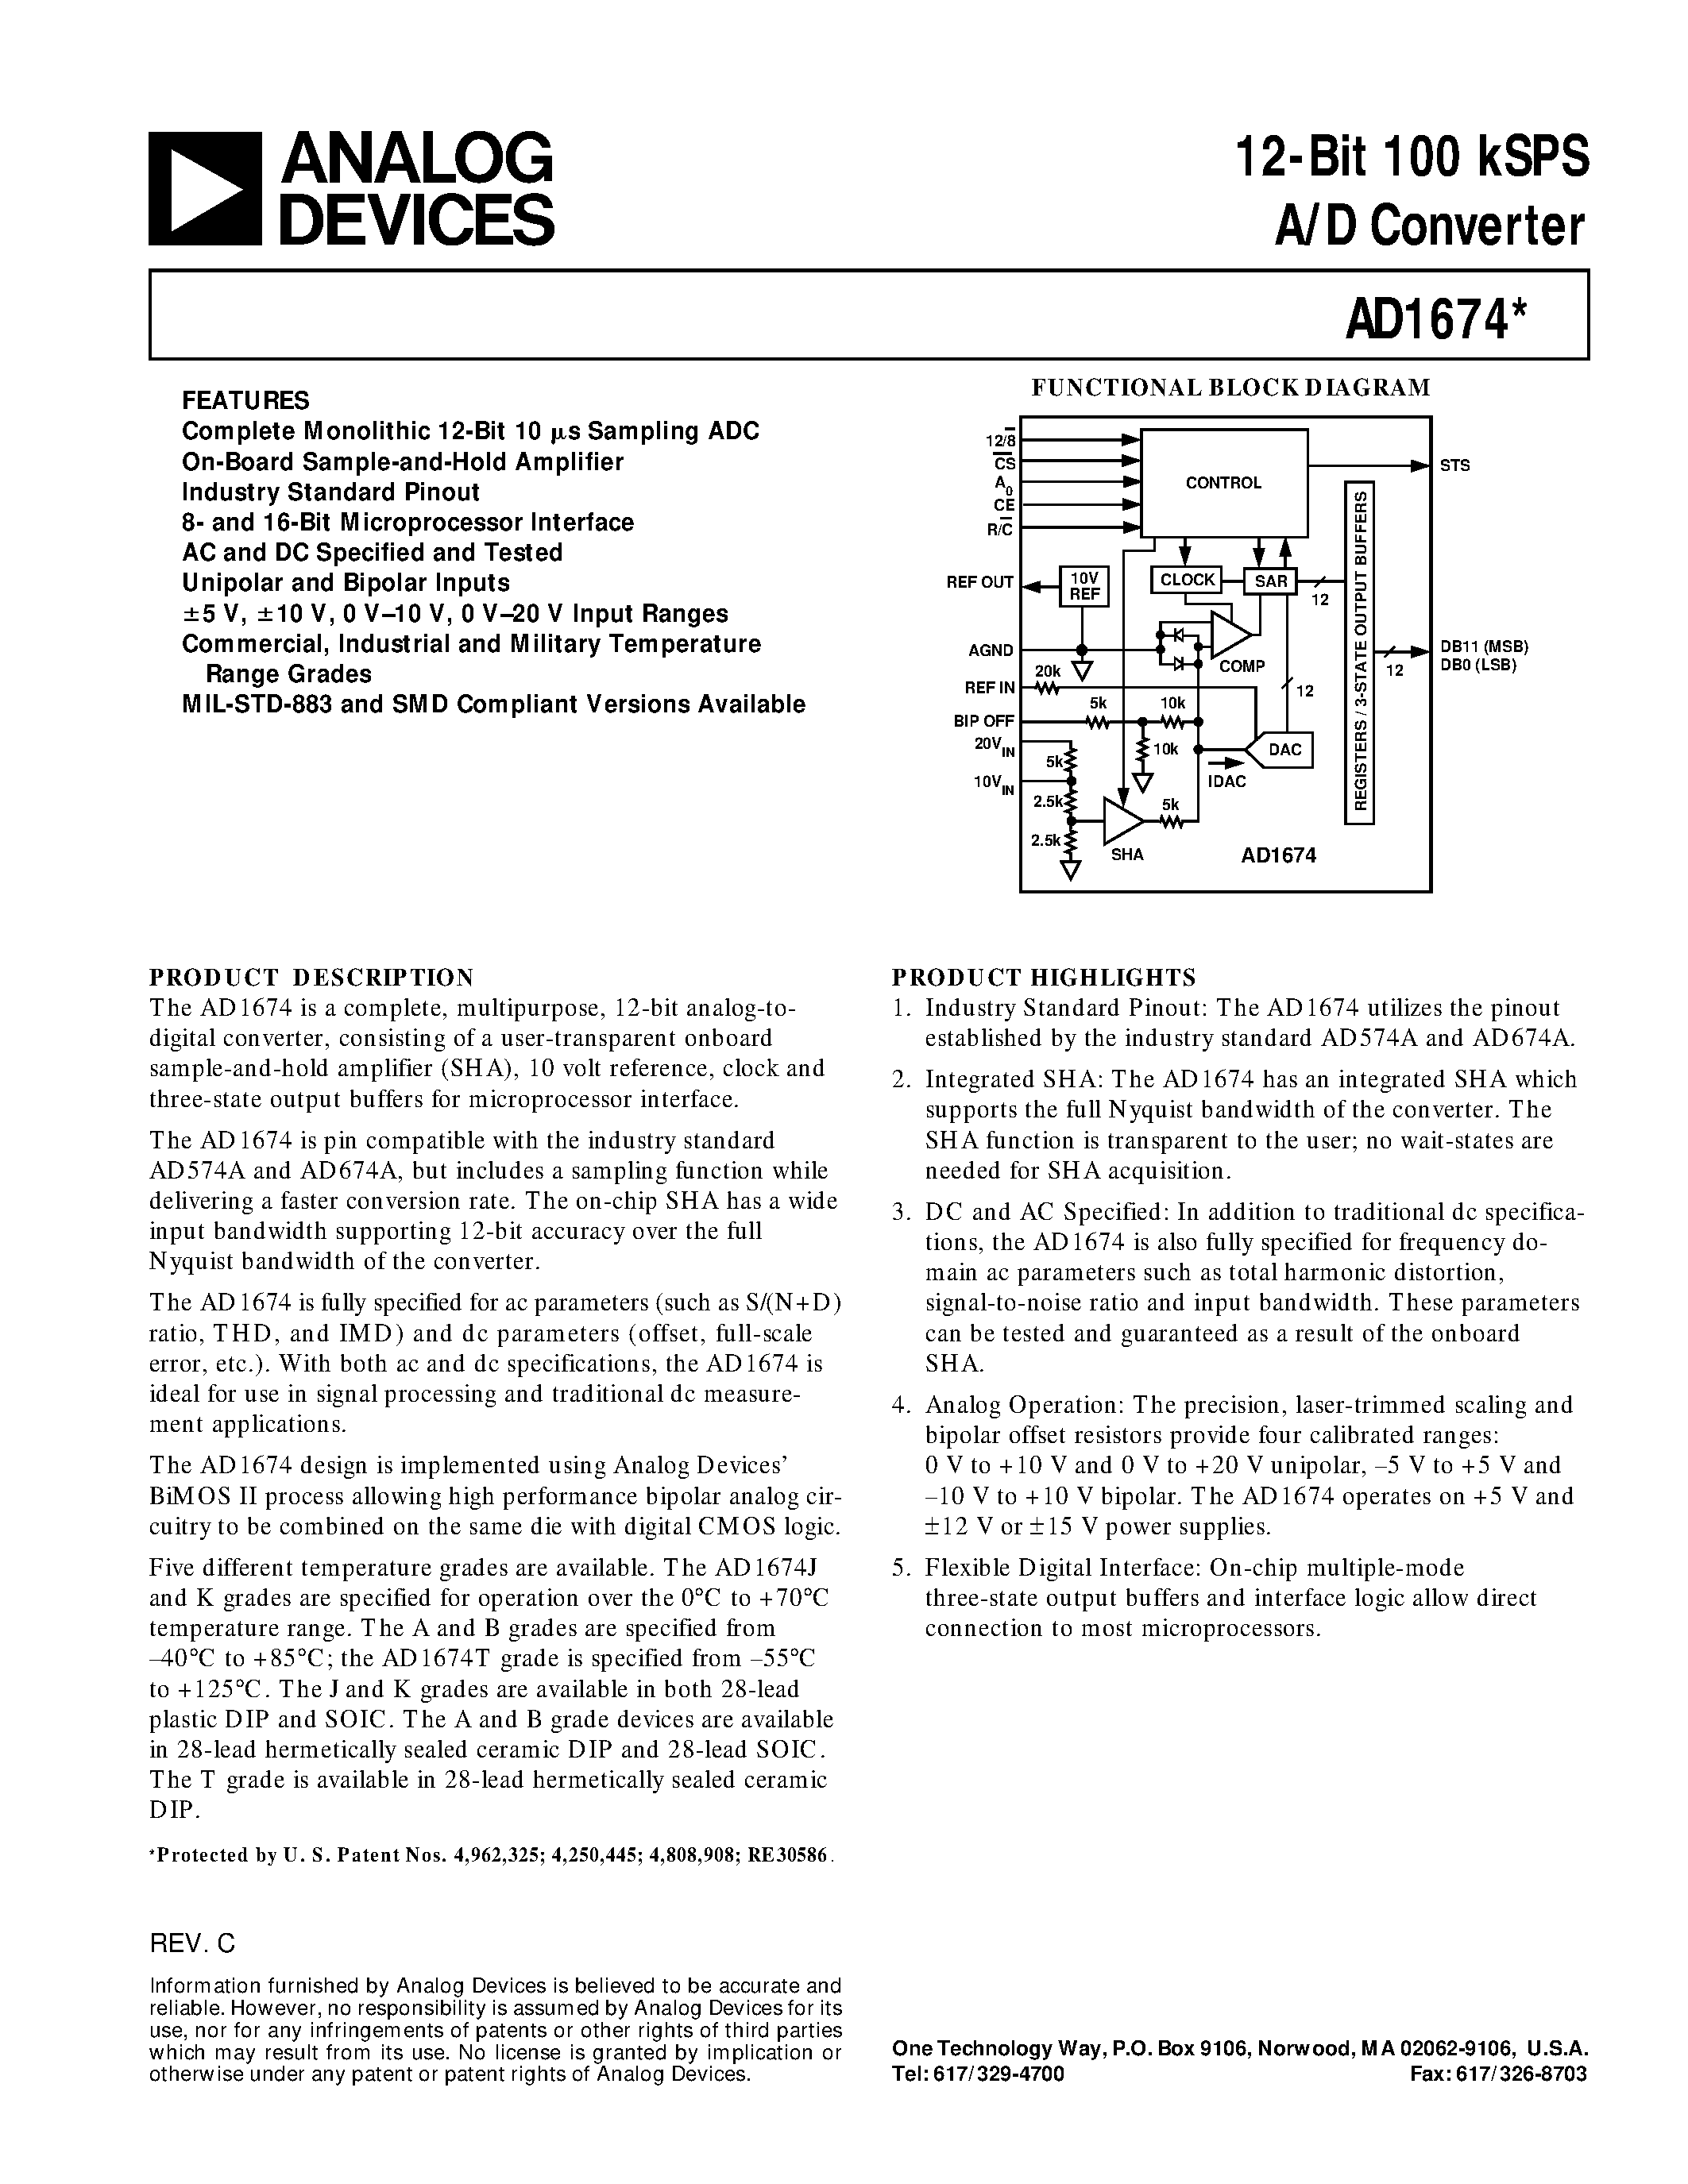 Datasheet AD1674A - 12-Bit 100 kSPS A/D Converter page 1